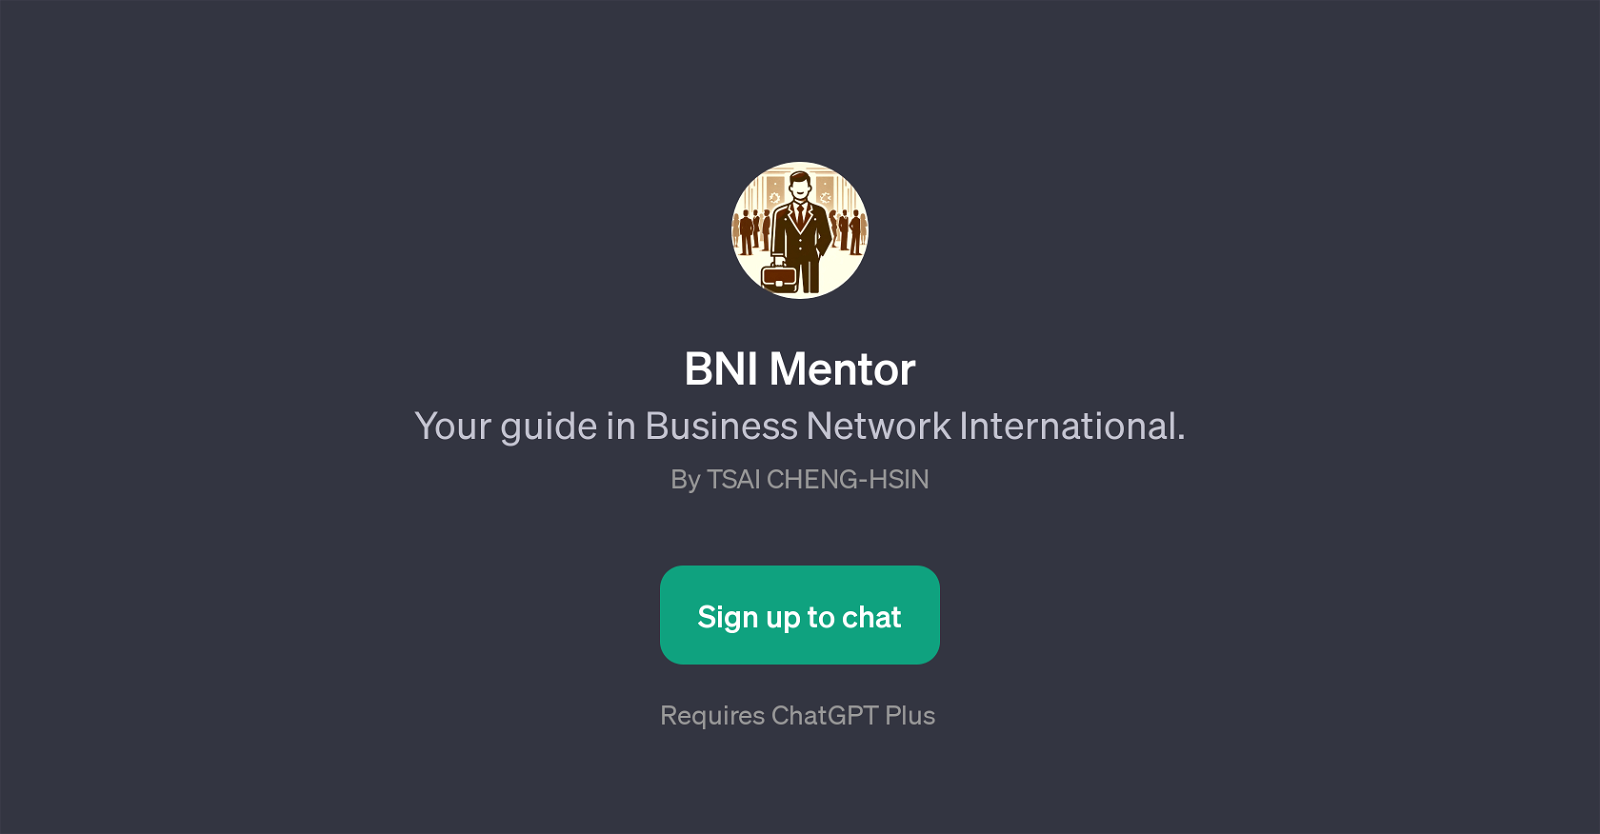 BNI Mentor website